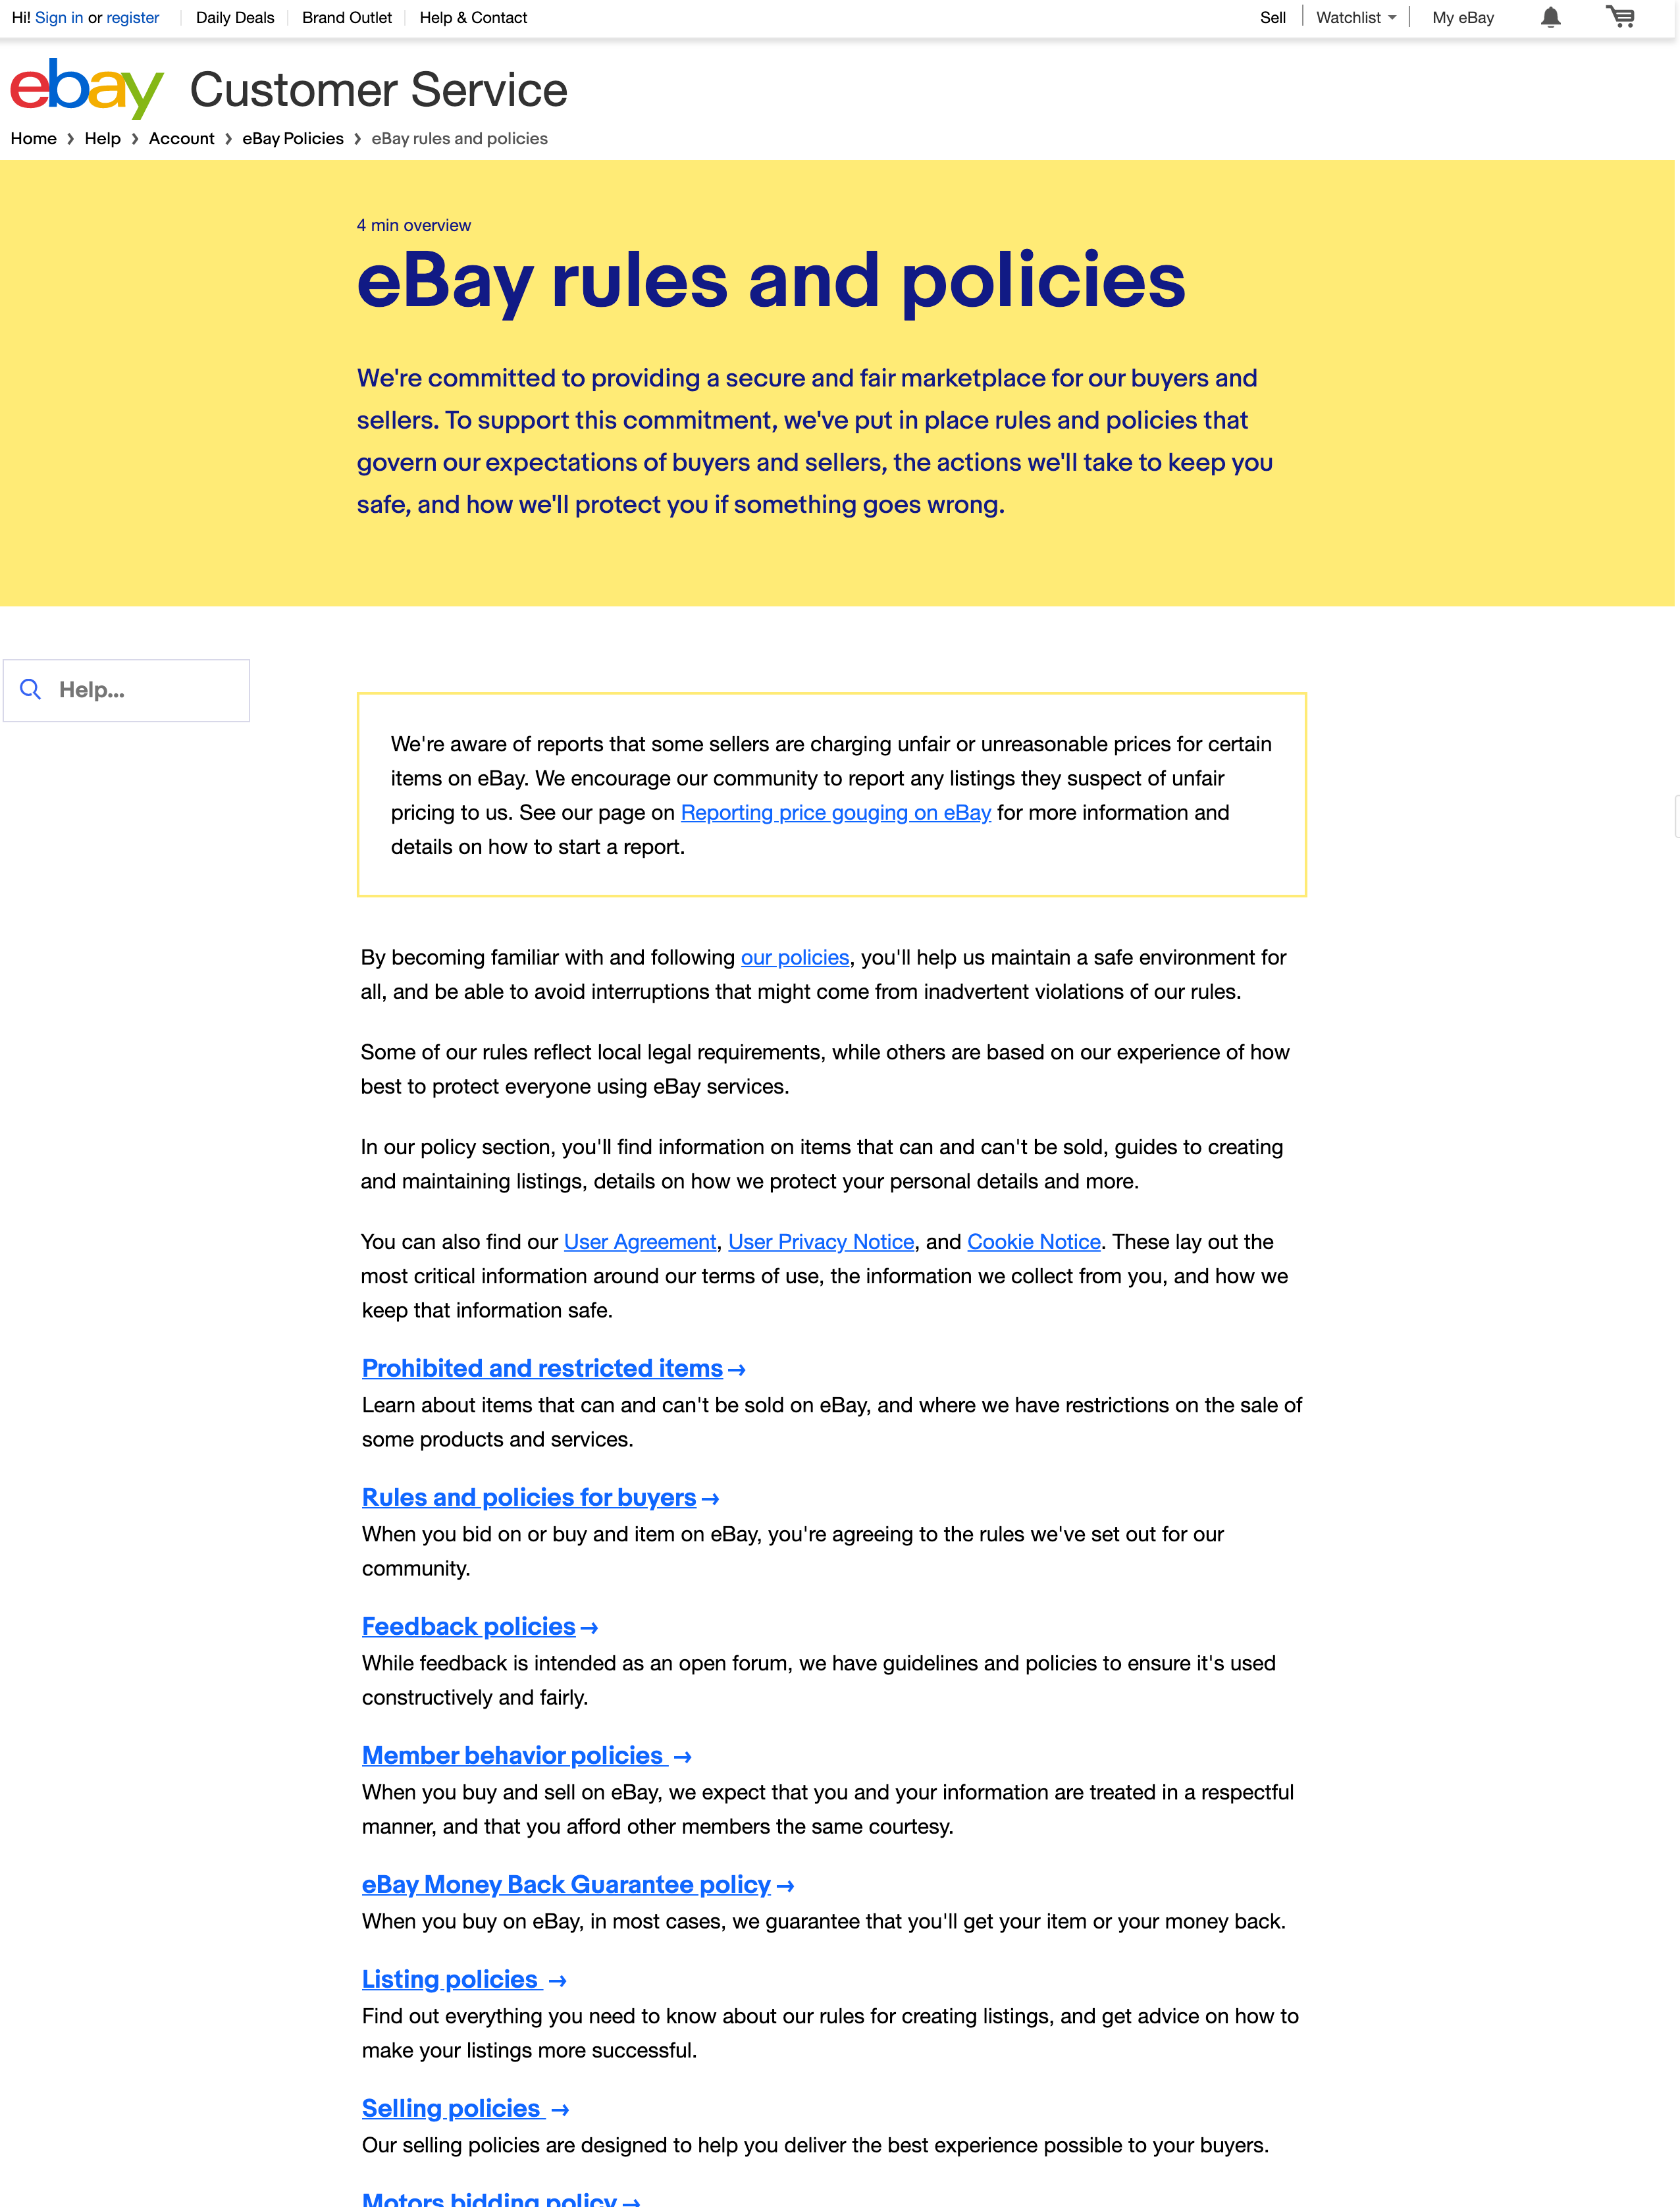 Скриншот политики конфиденциальности eBay